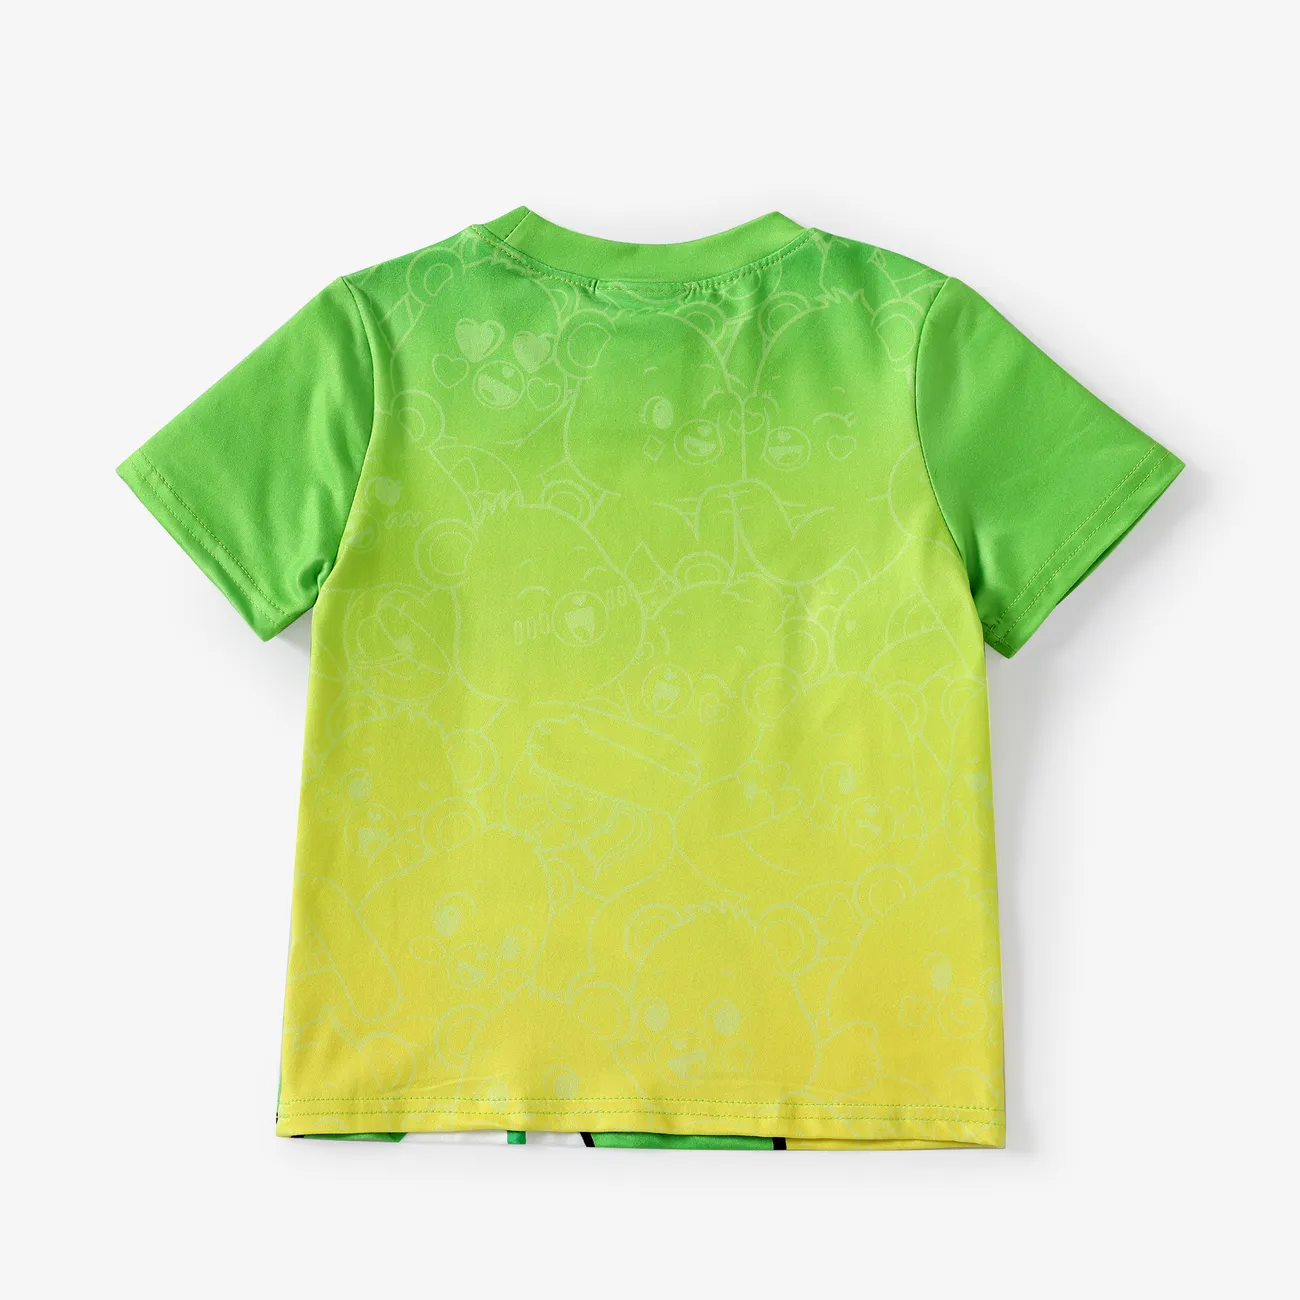 Glücksbärchis Unisex Kindlich T-Shirts grün big image 1